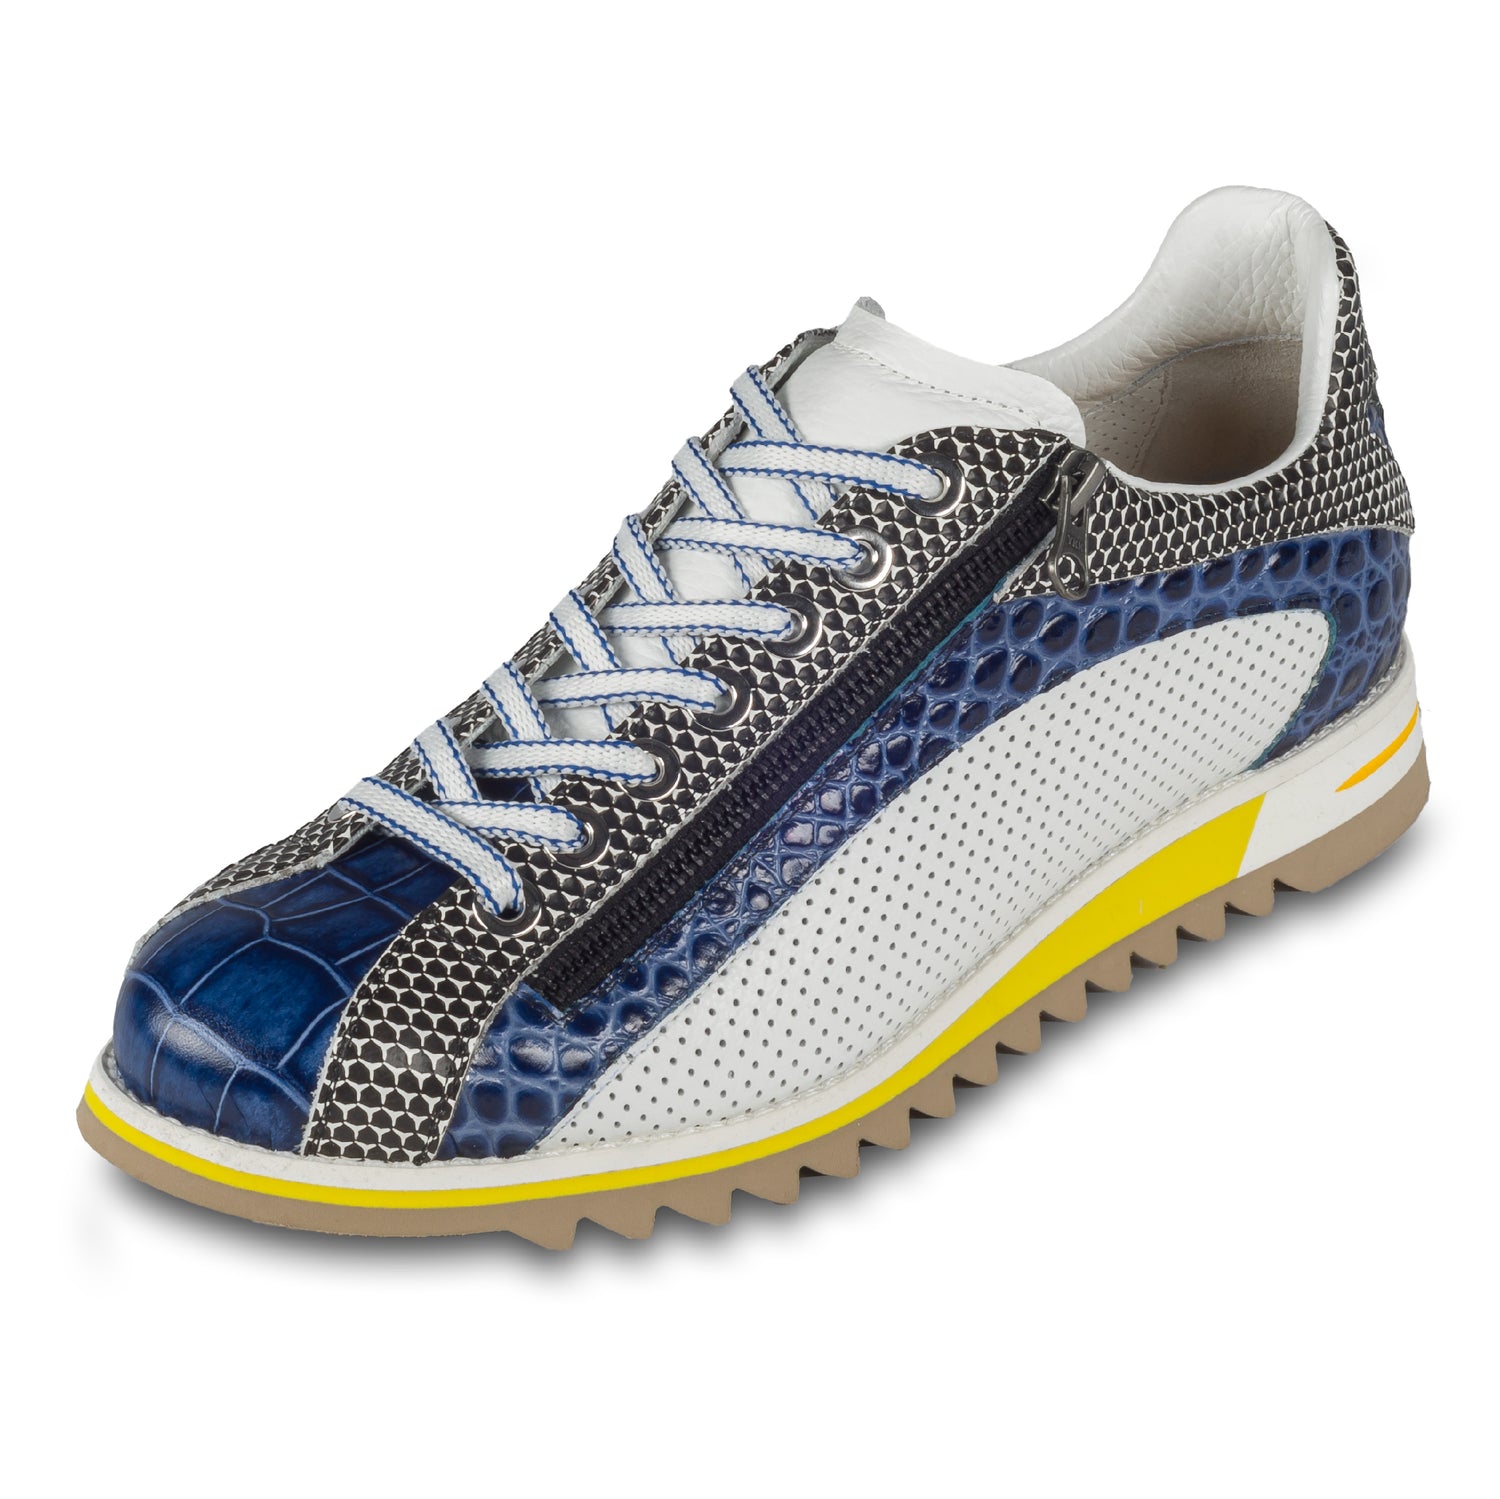 Lorenzi Herren Leder-Sneaker mit raffinierter Prägung und Reißverschluß, in blau / schwarz / weiß. Handgefertigt. Schräge Ansicht linker Schuh.